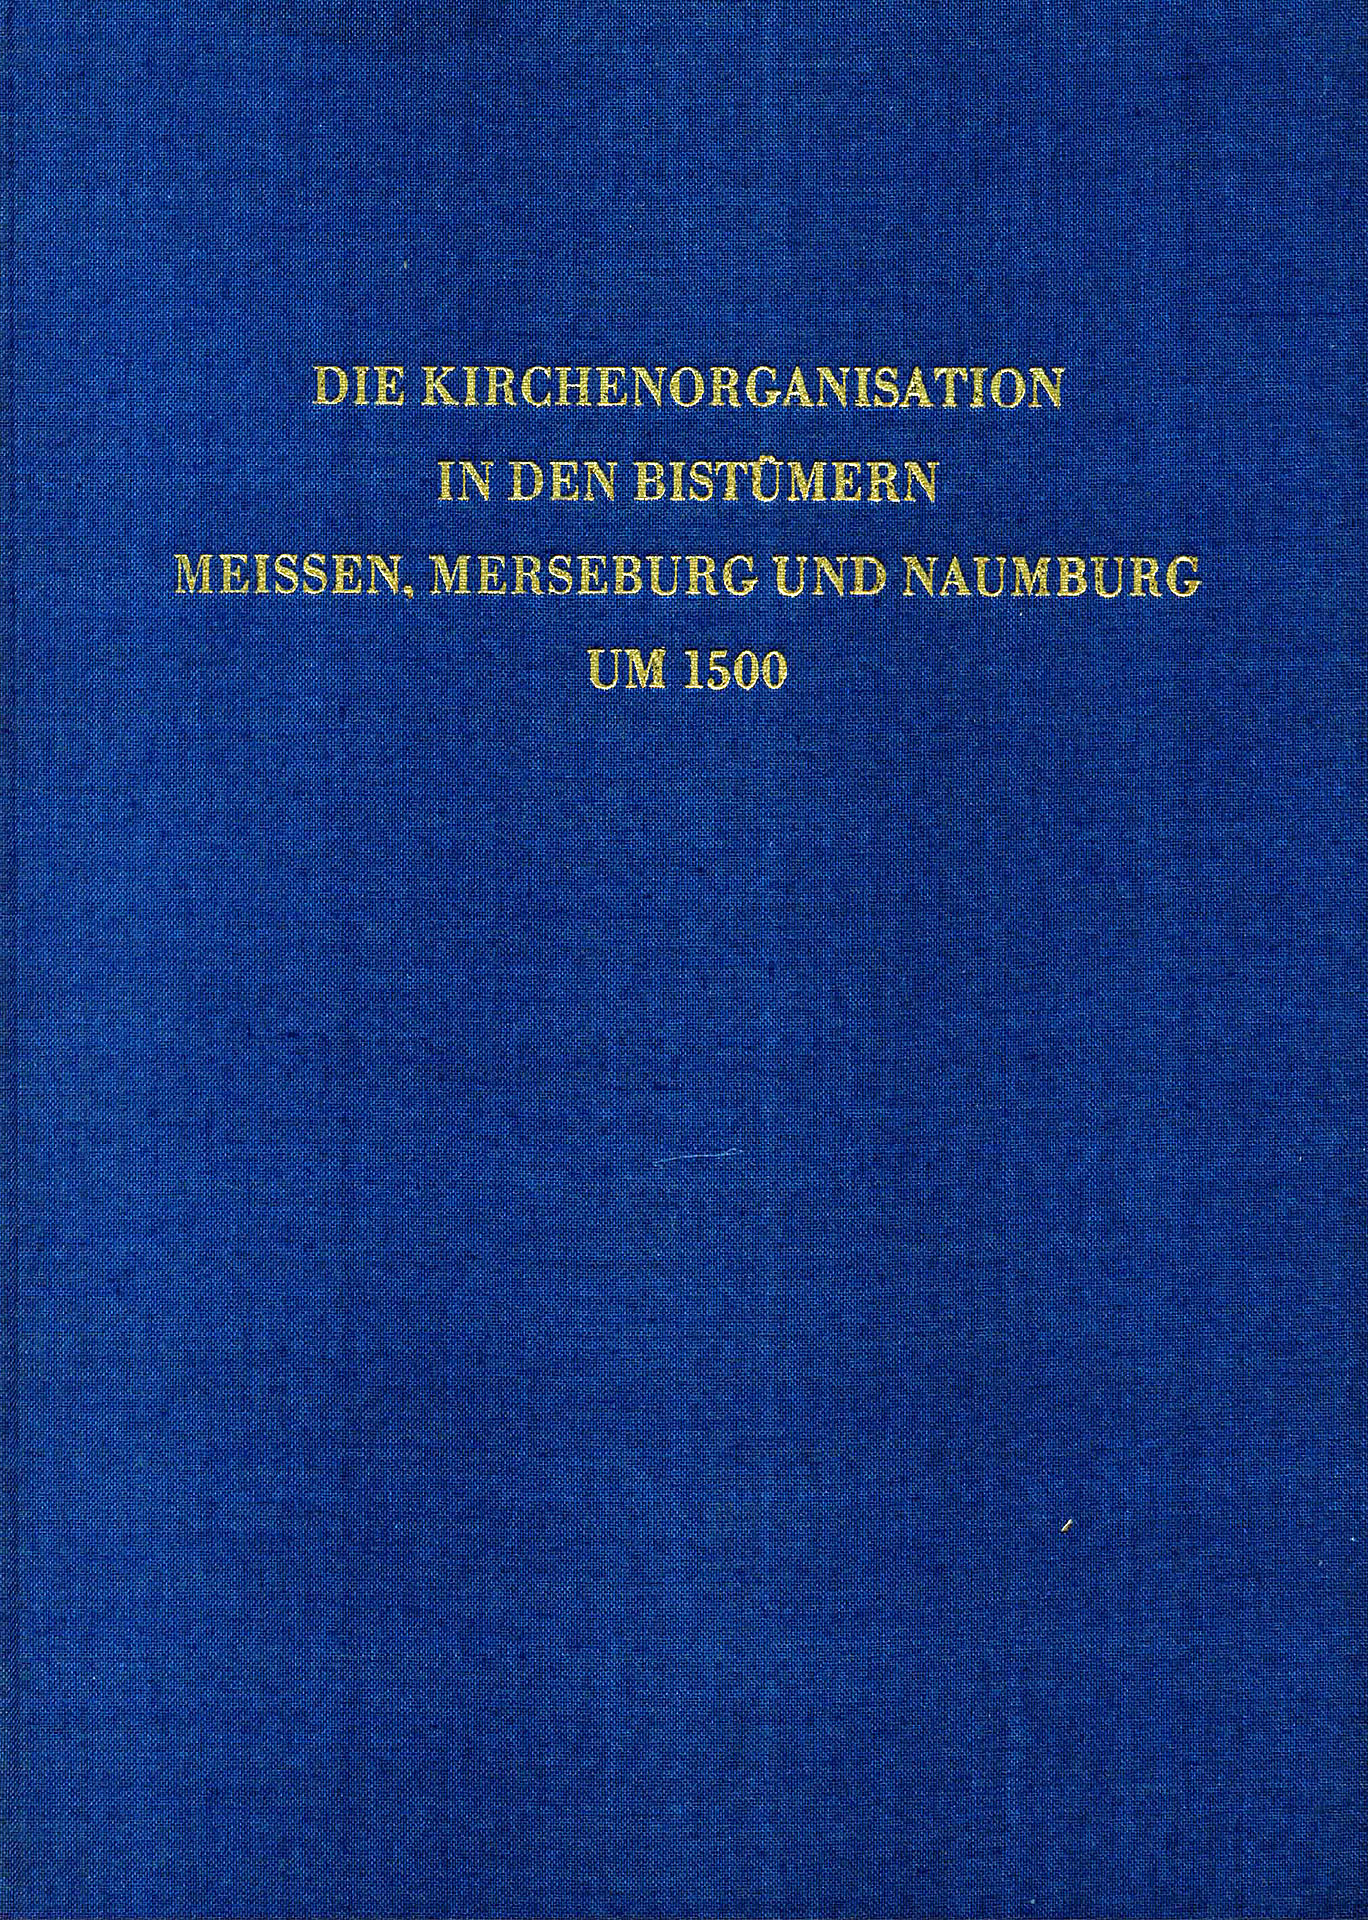 Die Kirchenorganisation in den Bistümern Meissen, Merseburg und Naumburg um 1500 - Blaschke, Karlheinz / Haupt, Walther / Wiessner, Heinz